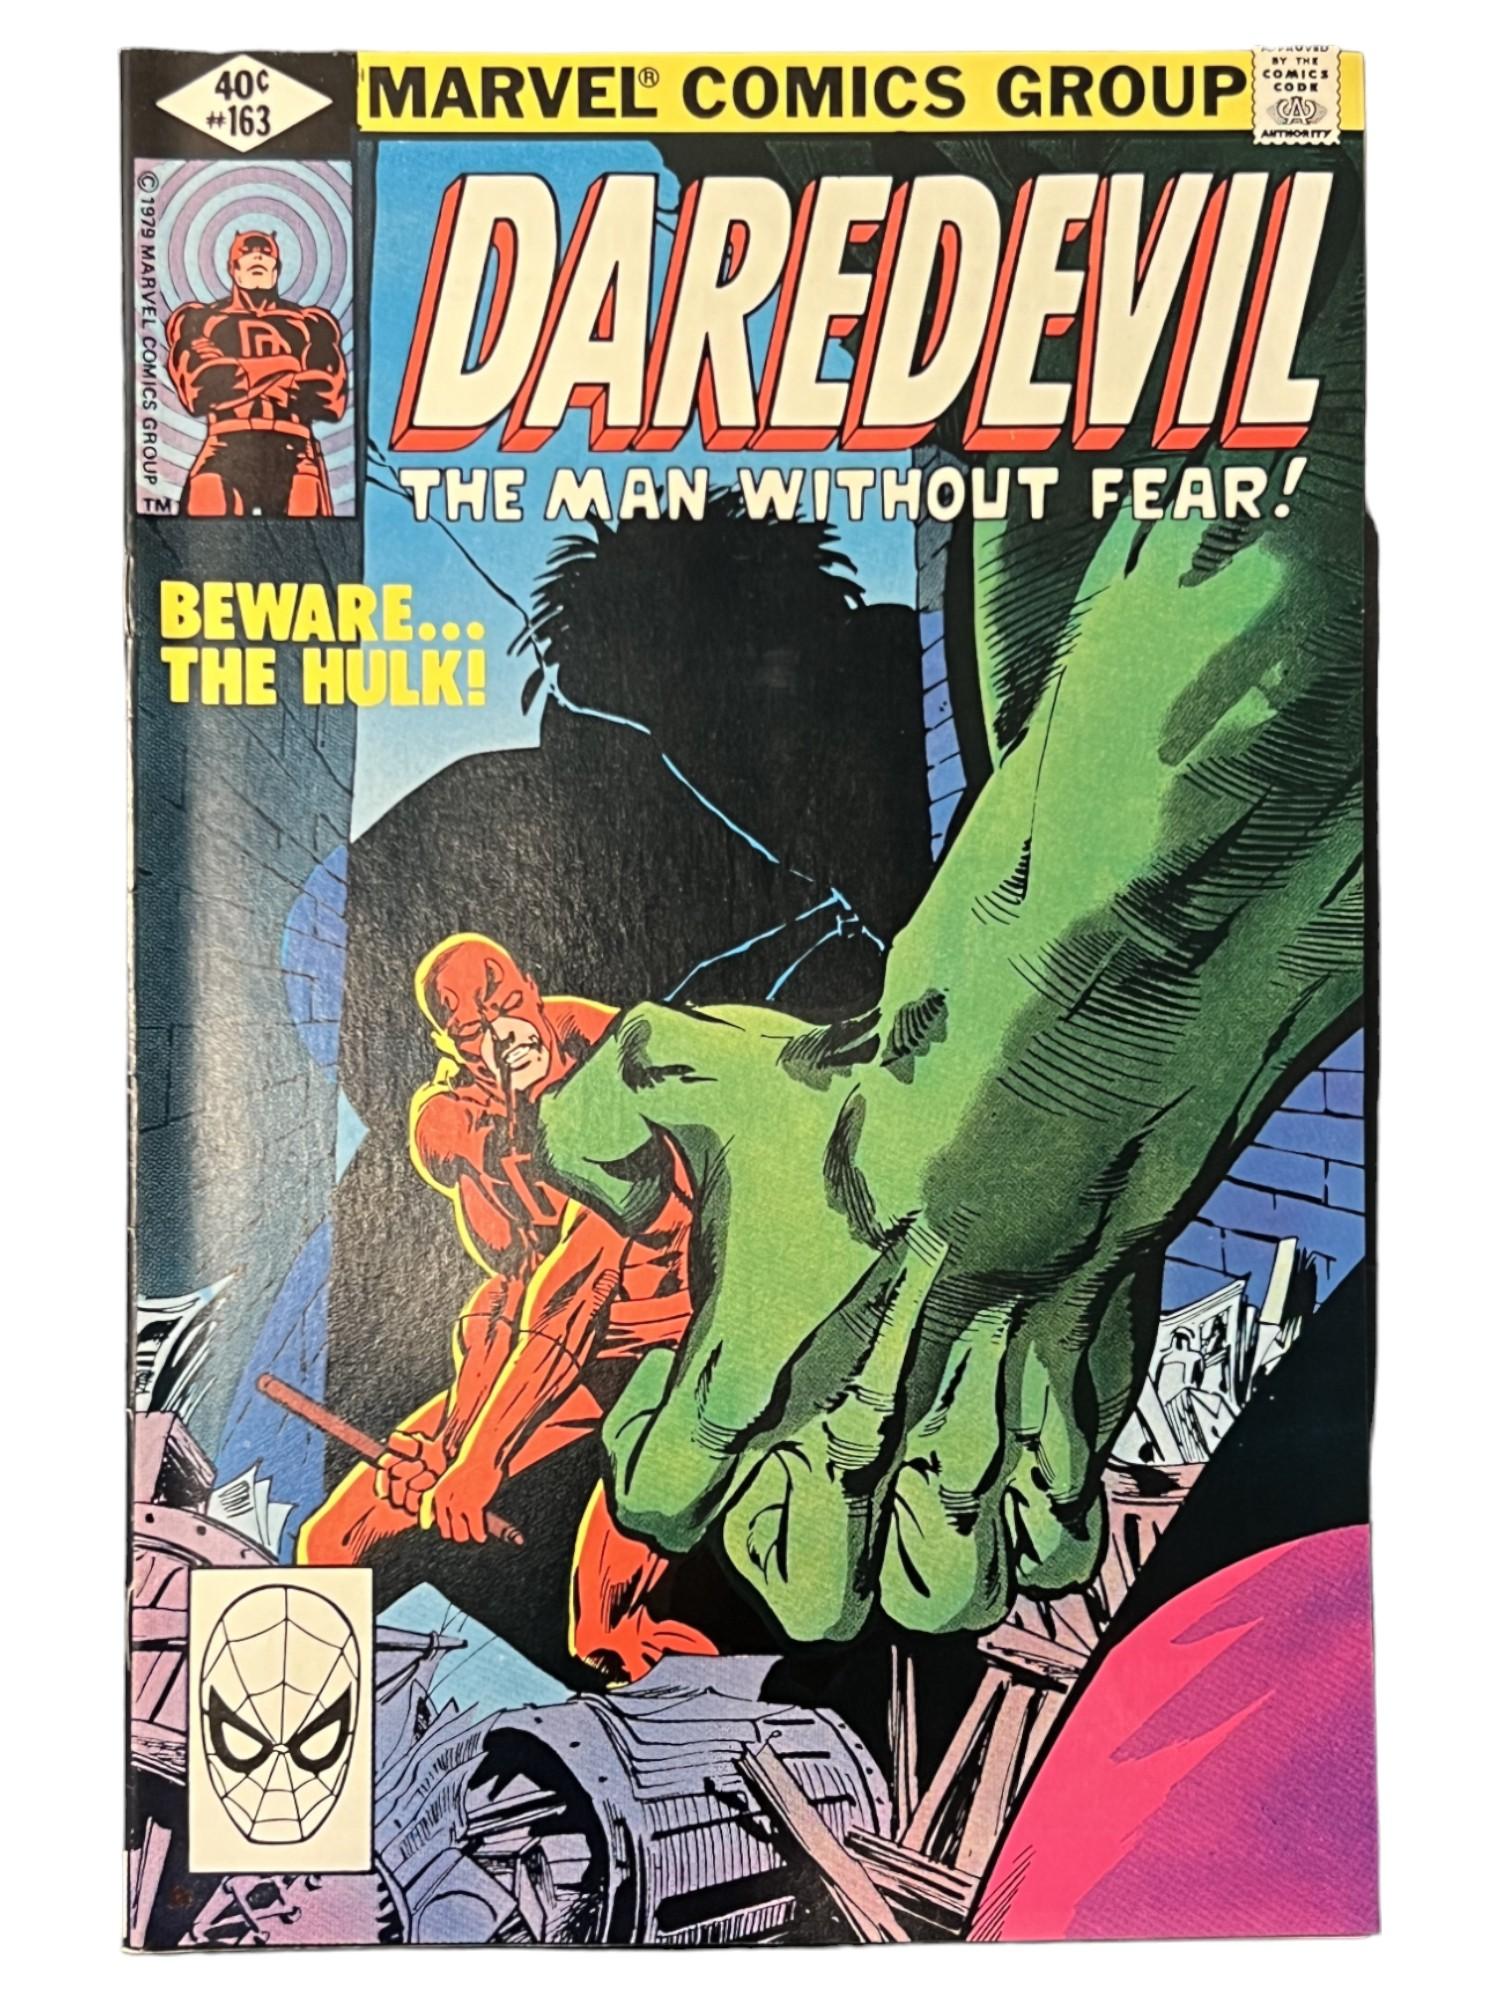 Daredevil #163 Hulk Appearance Marvel Comic Book